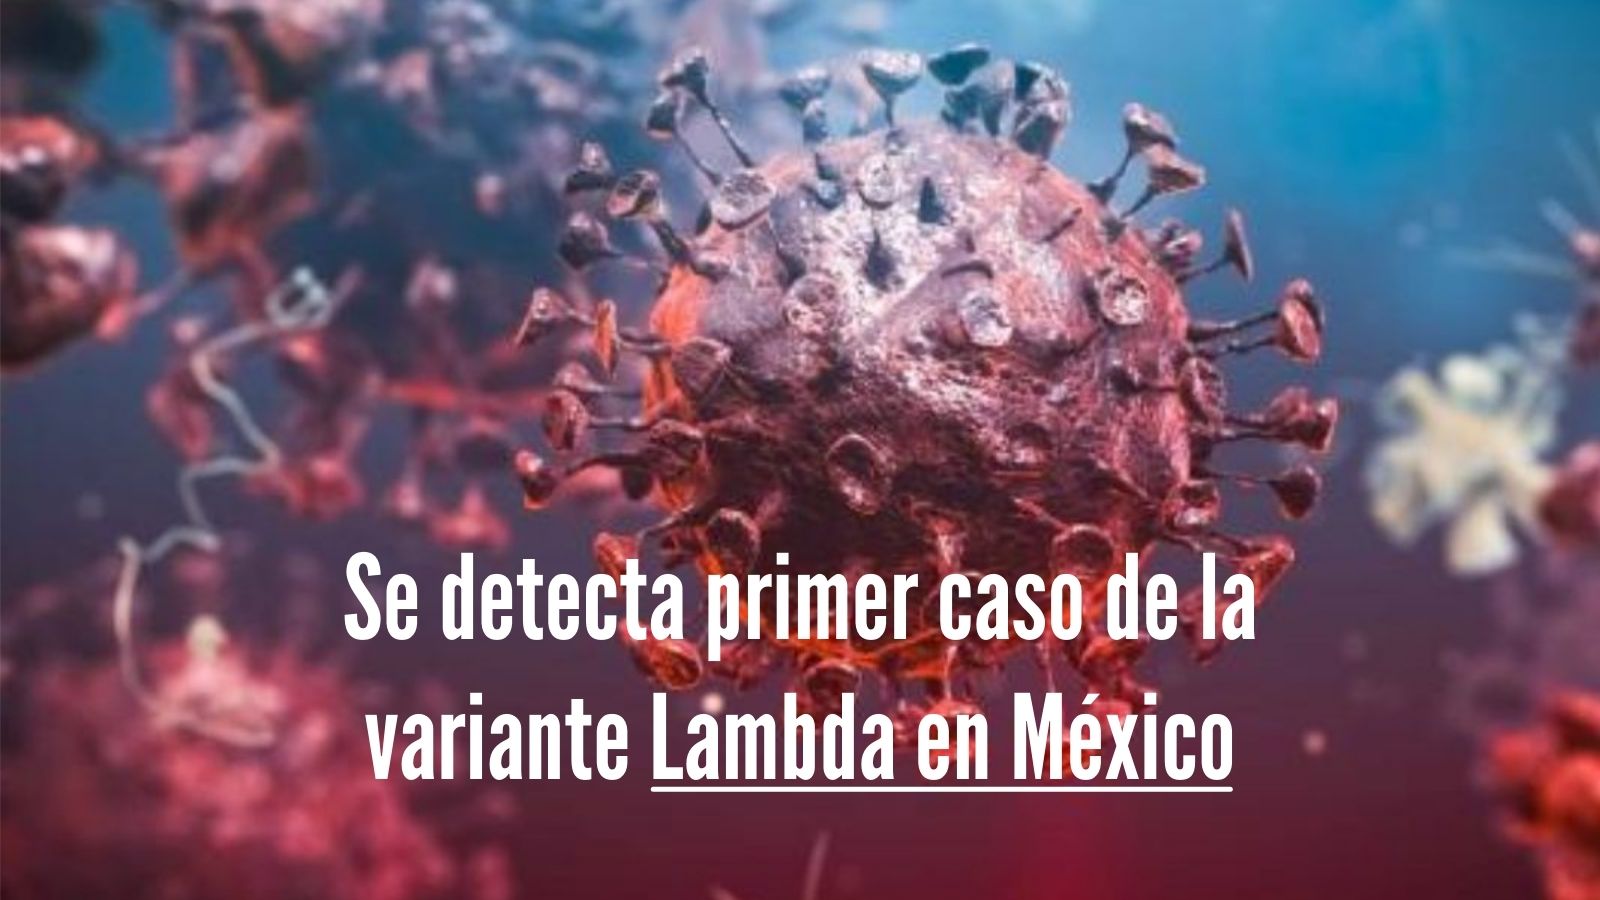 Se detecta primer caso de la variante lambda en mexico